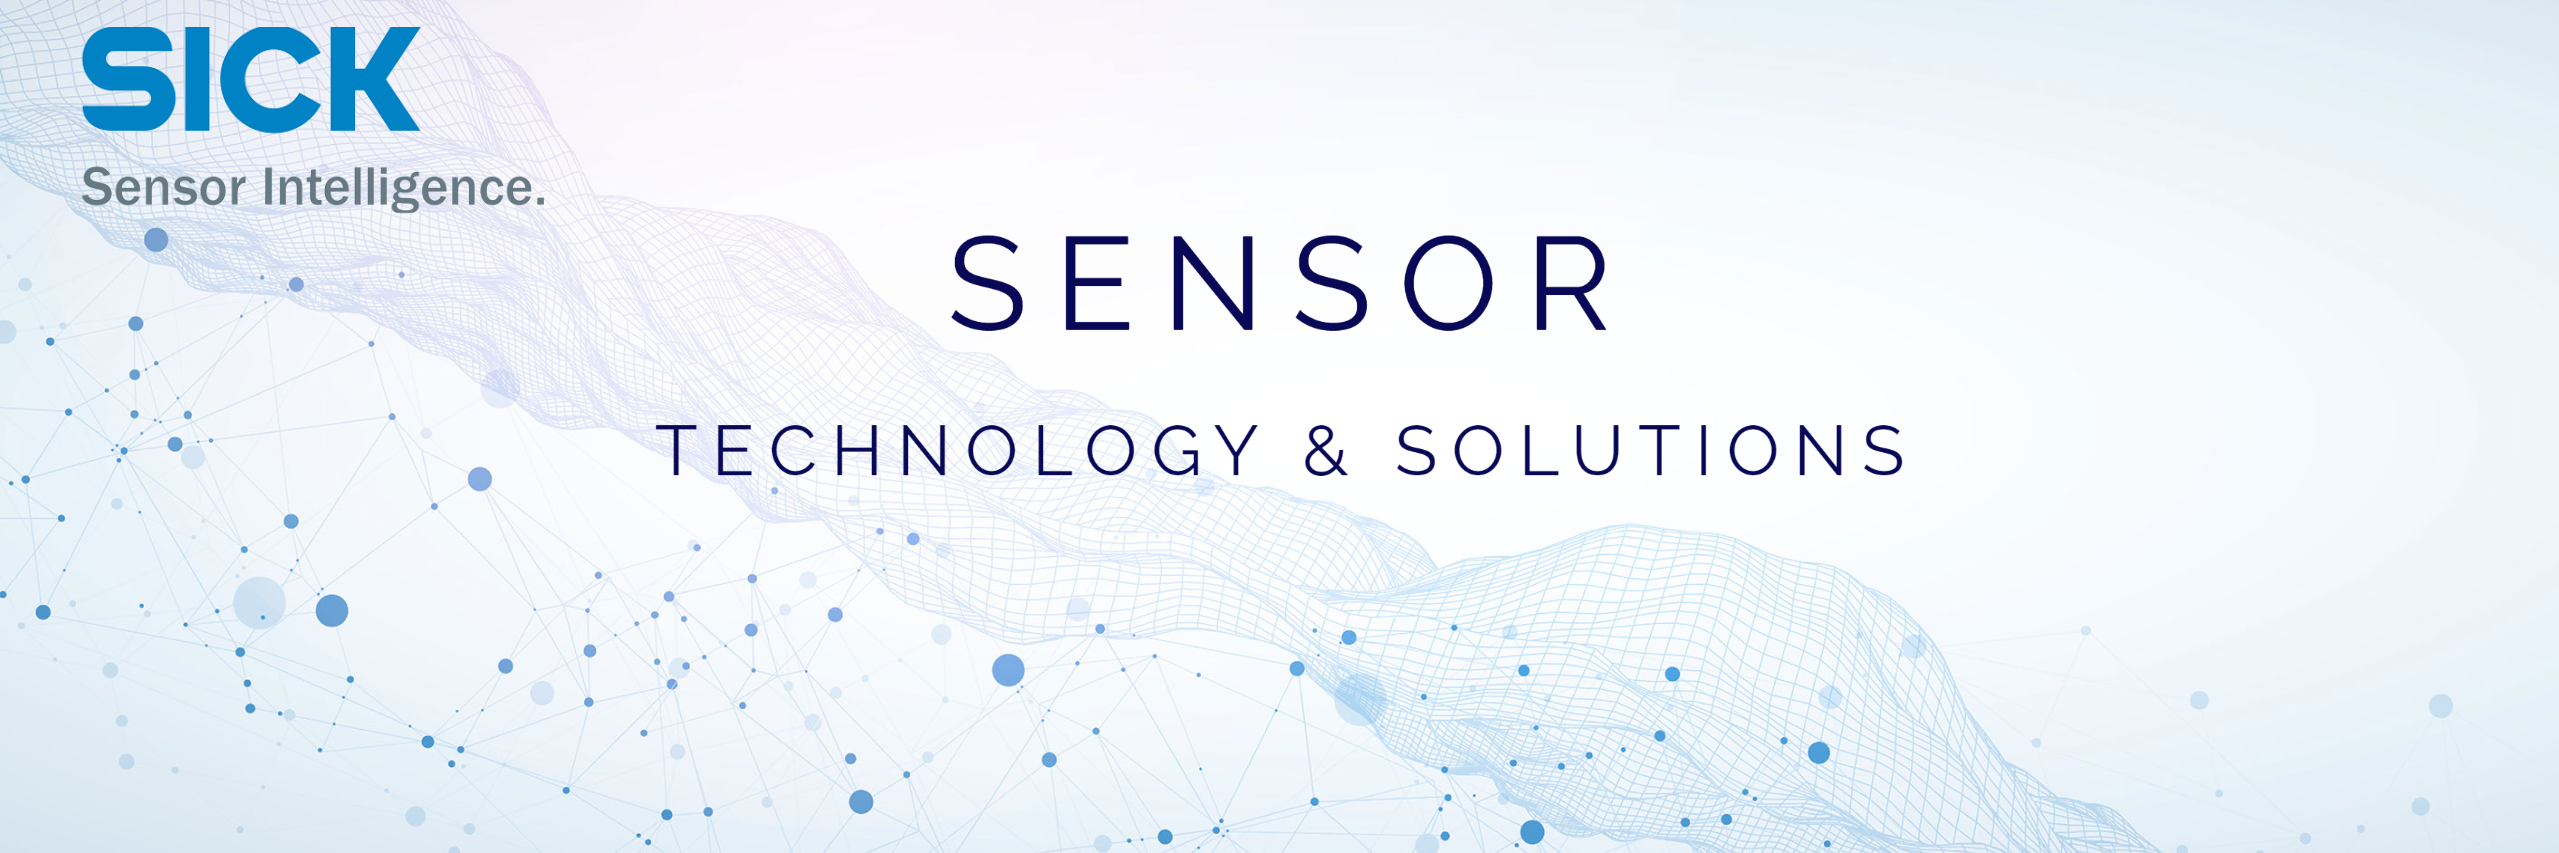 Sensor Solutions for SICK